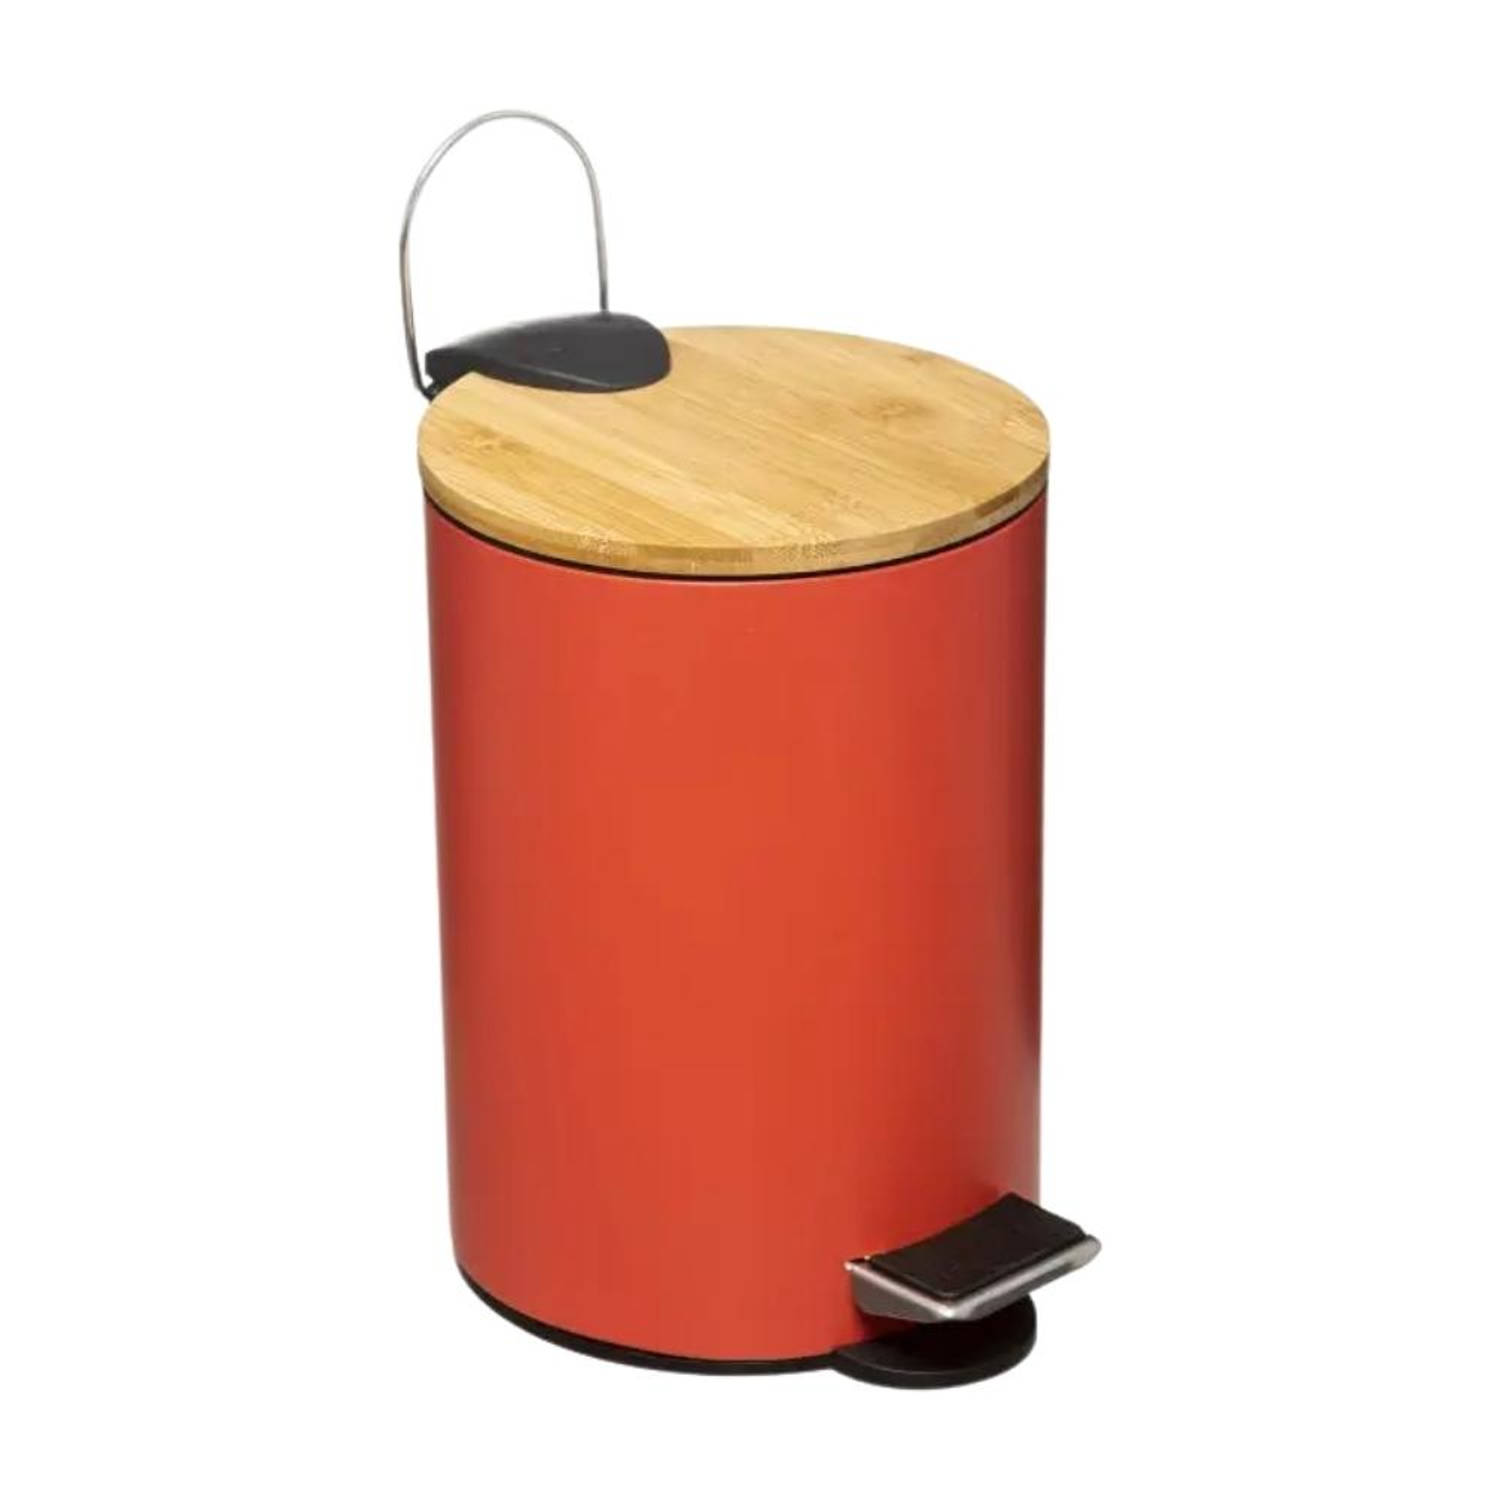 Orange85 Pedaalemmer - Prullenbak - Rood - 3 Liter - Bamboe En Metaal